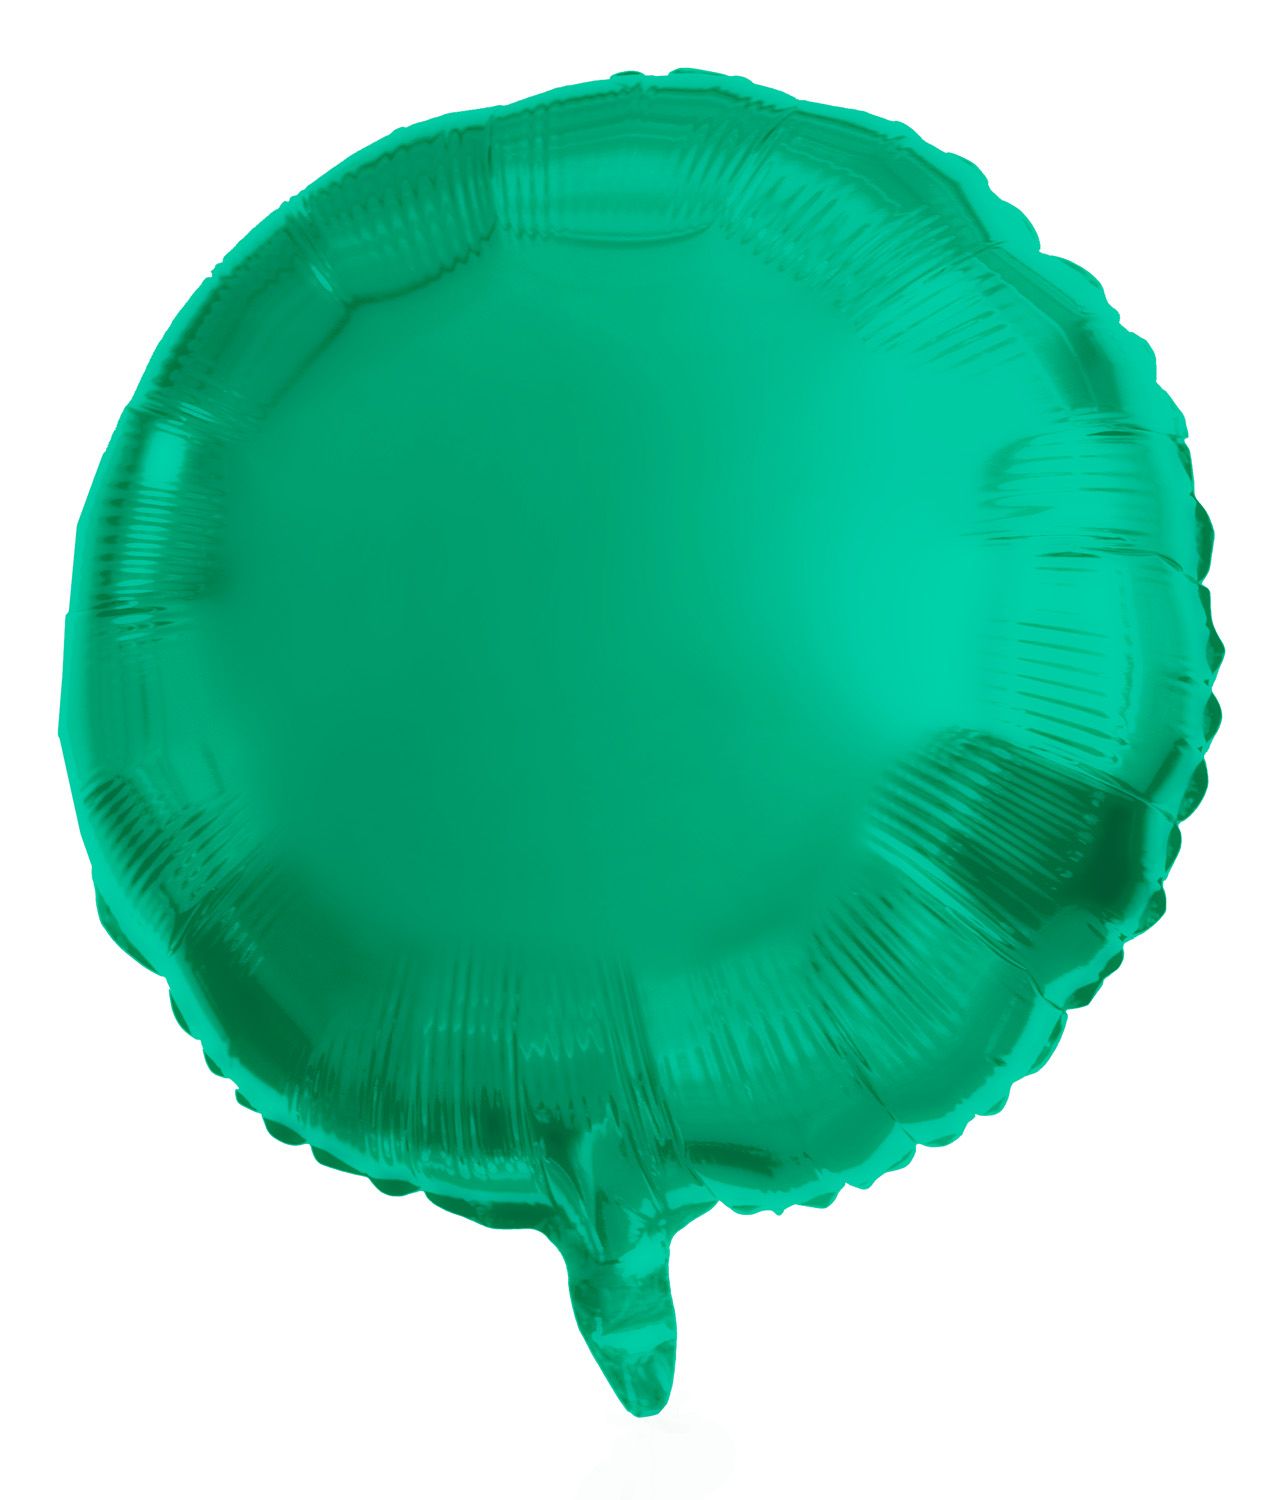 Folieballon groen metallic rond